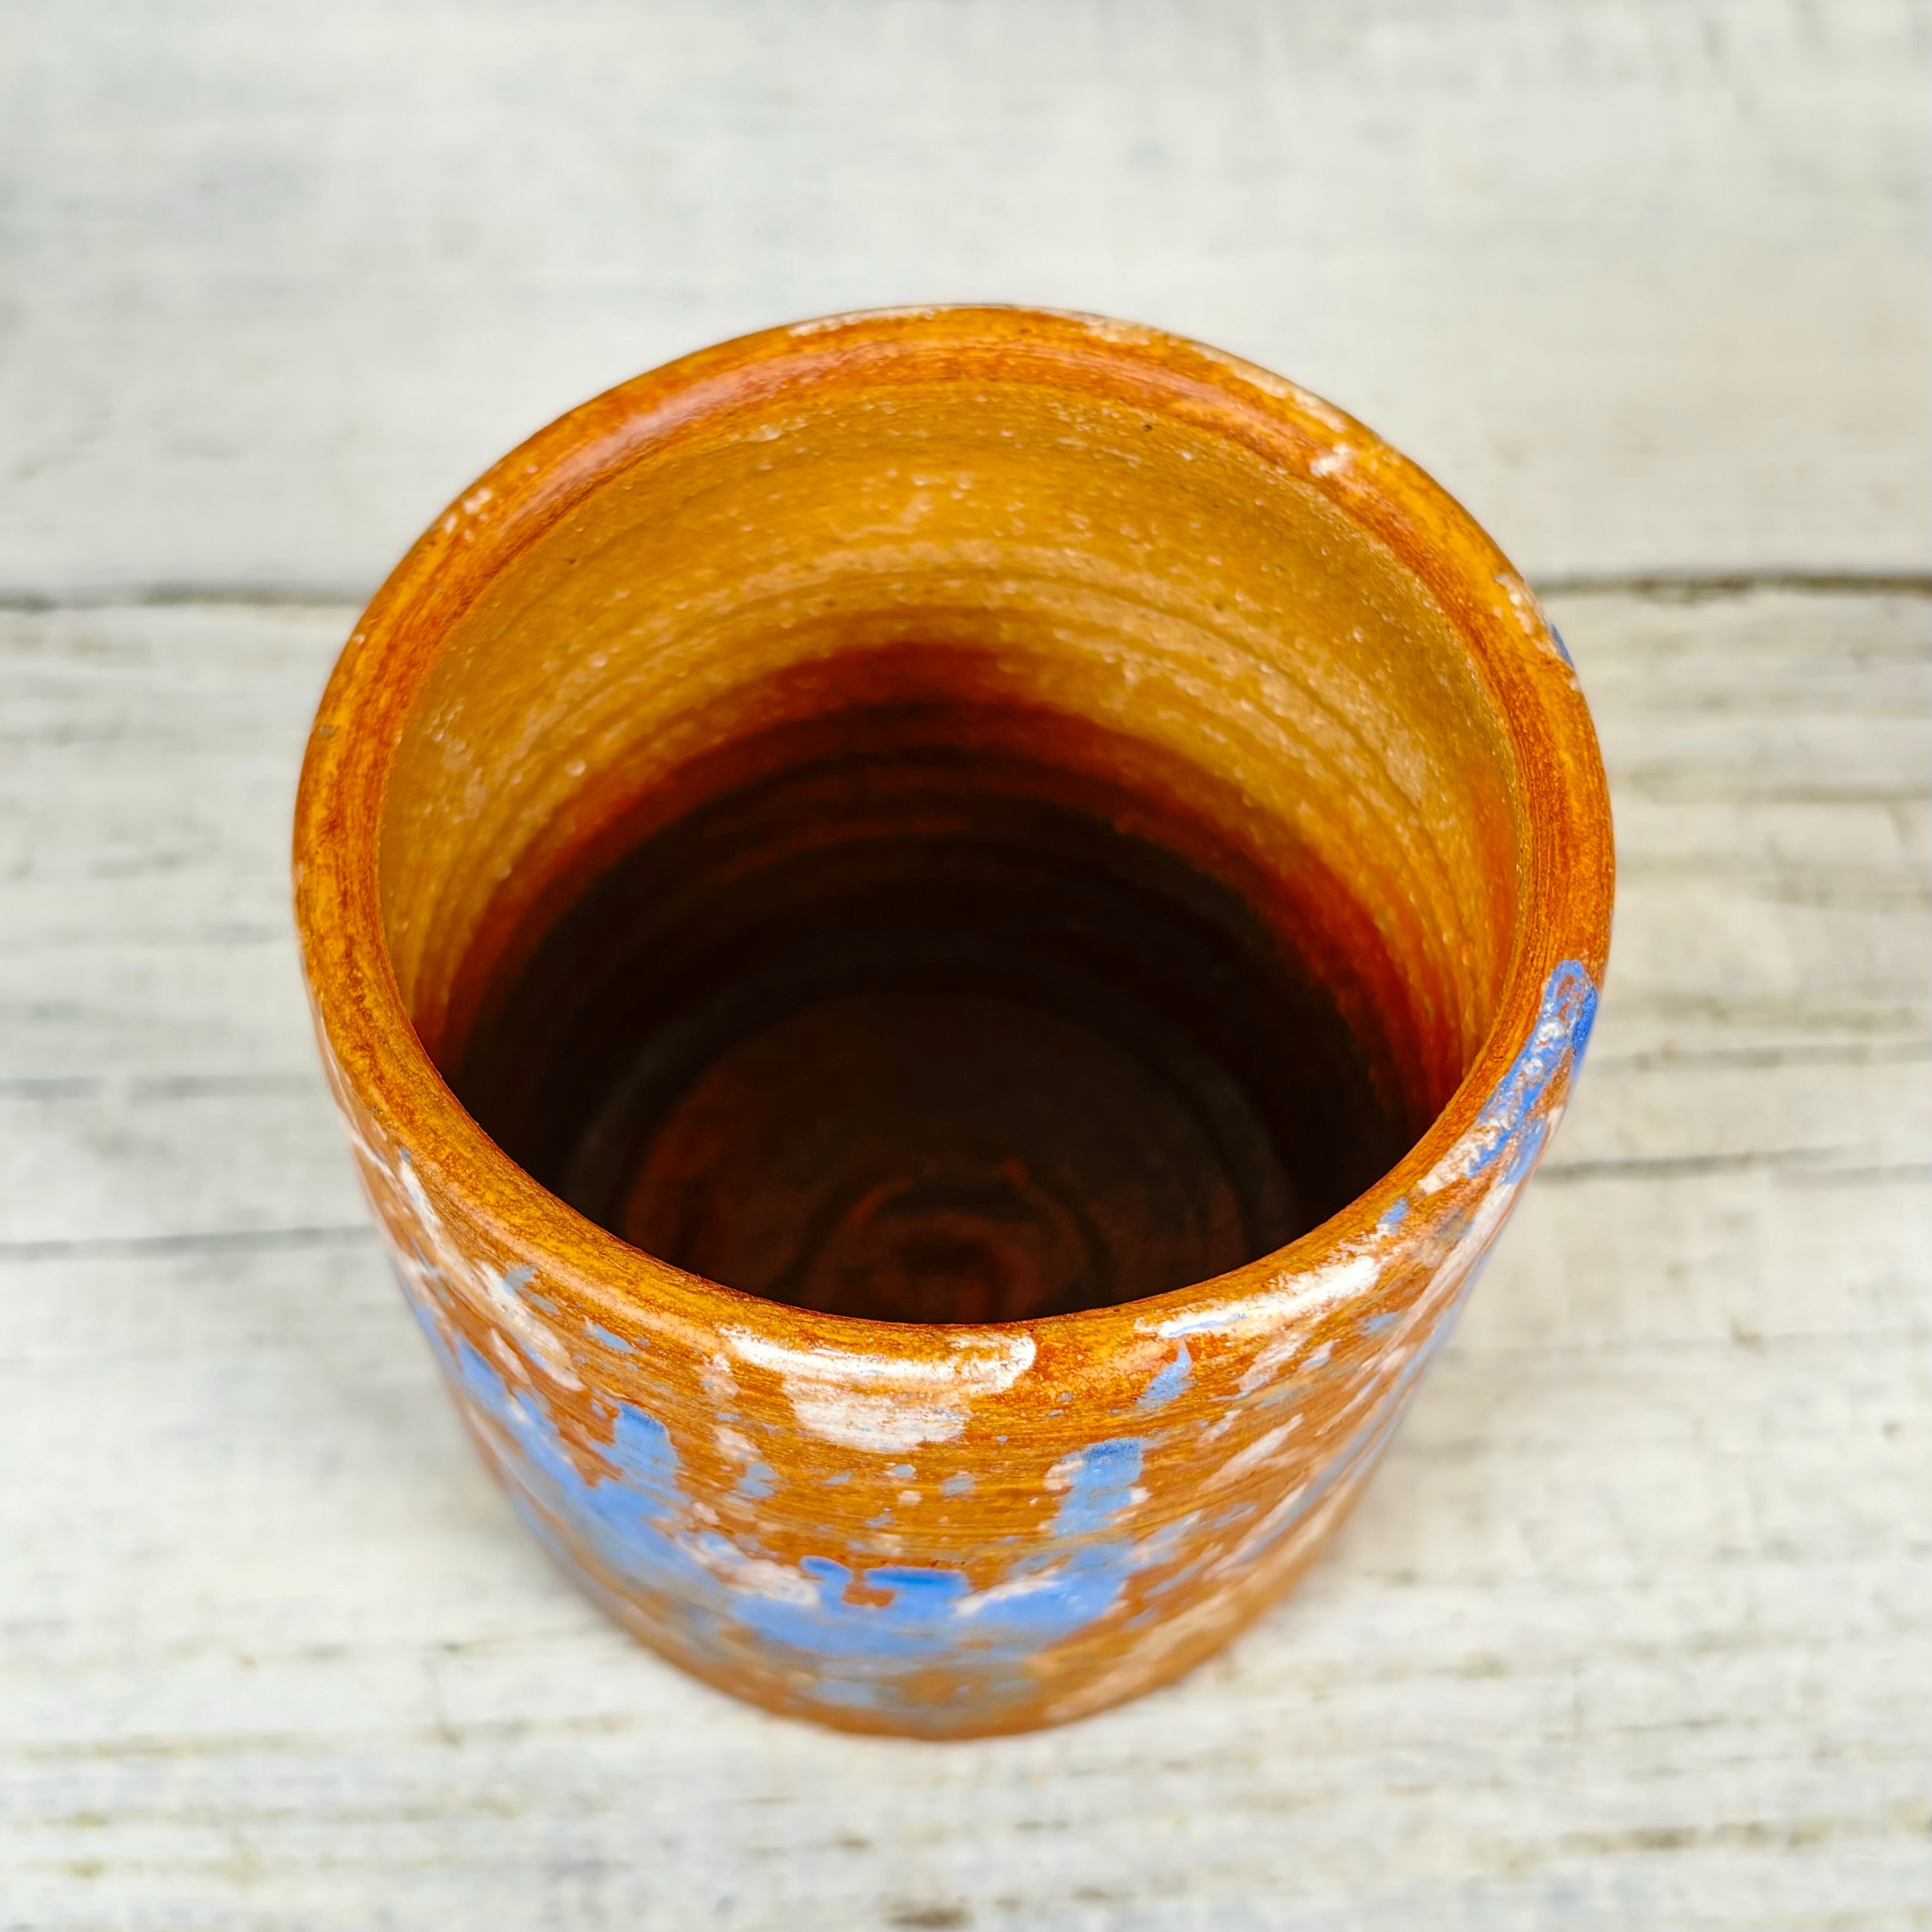 Splash Orange Glass Pot